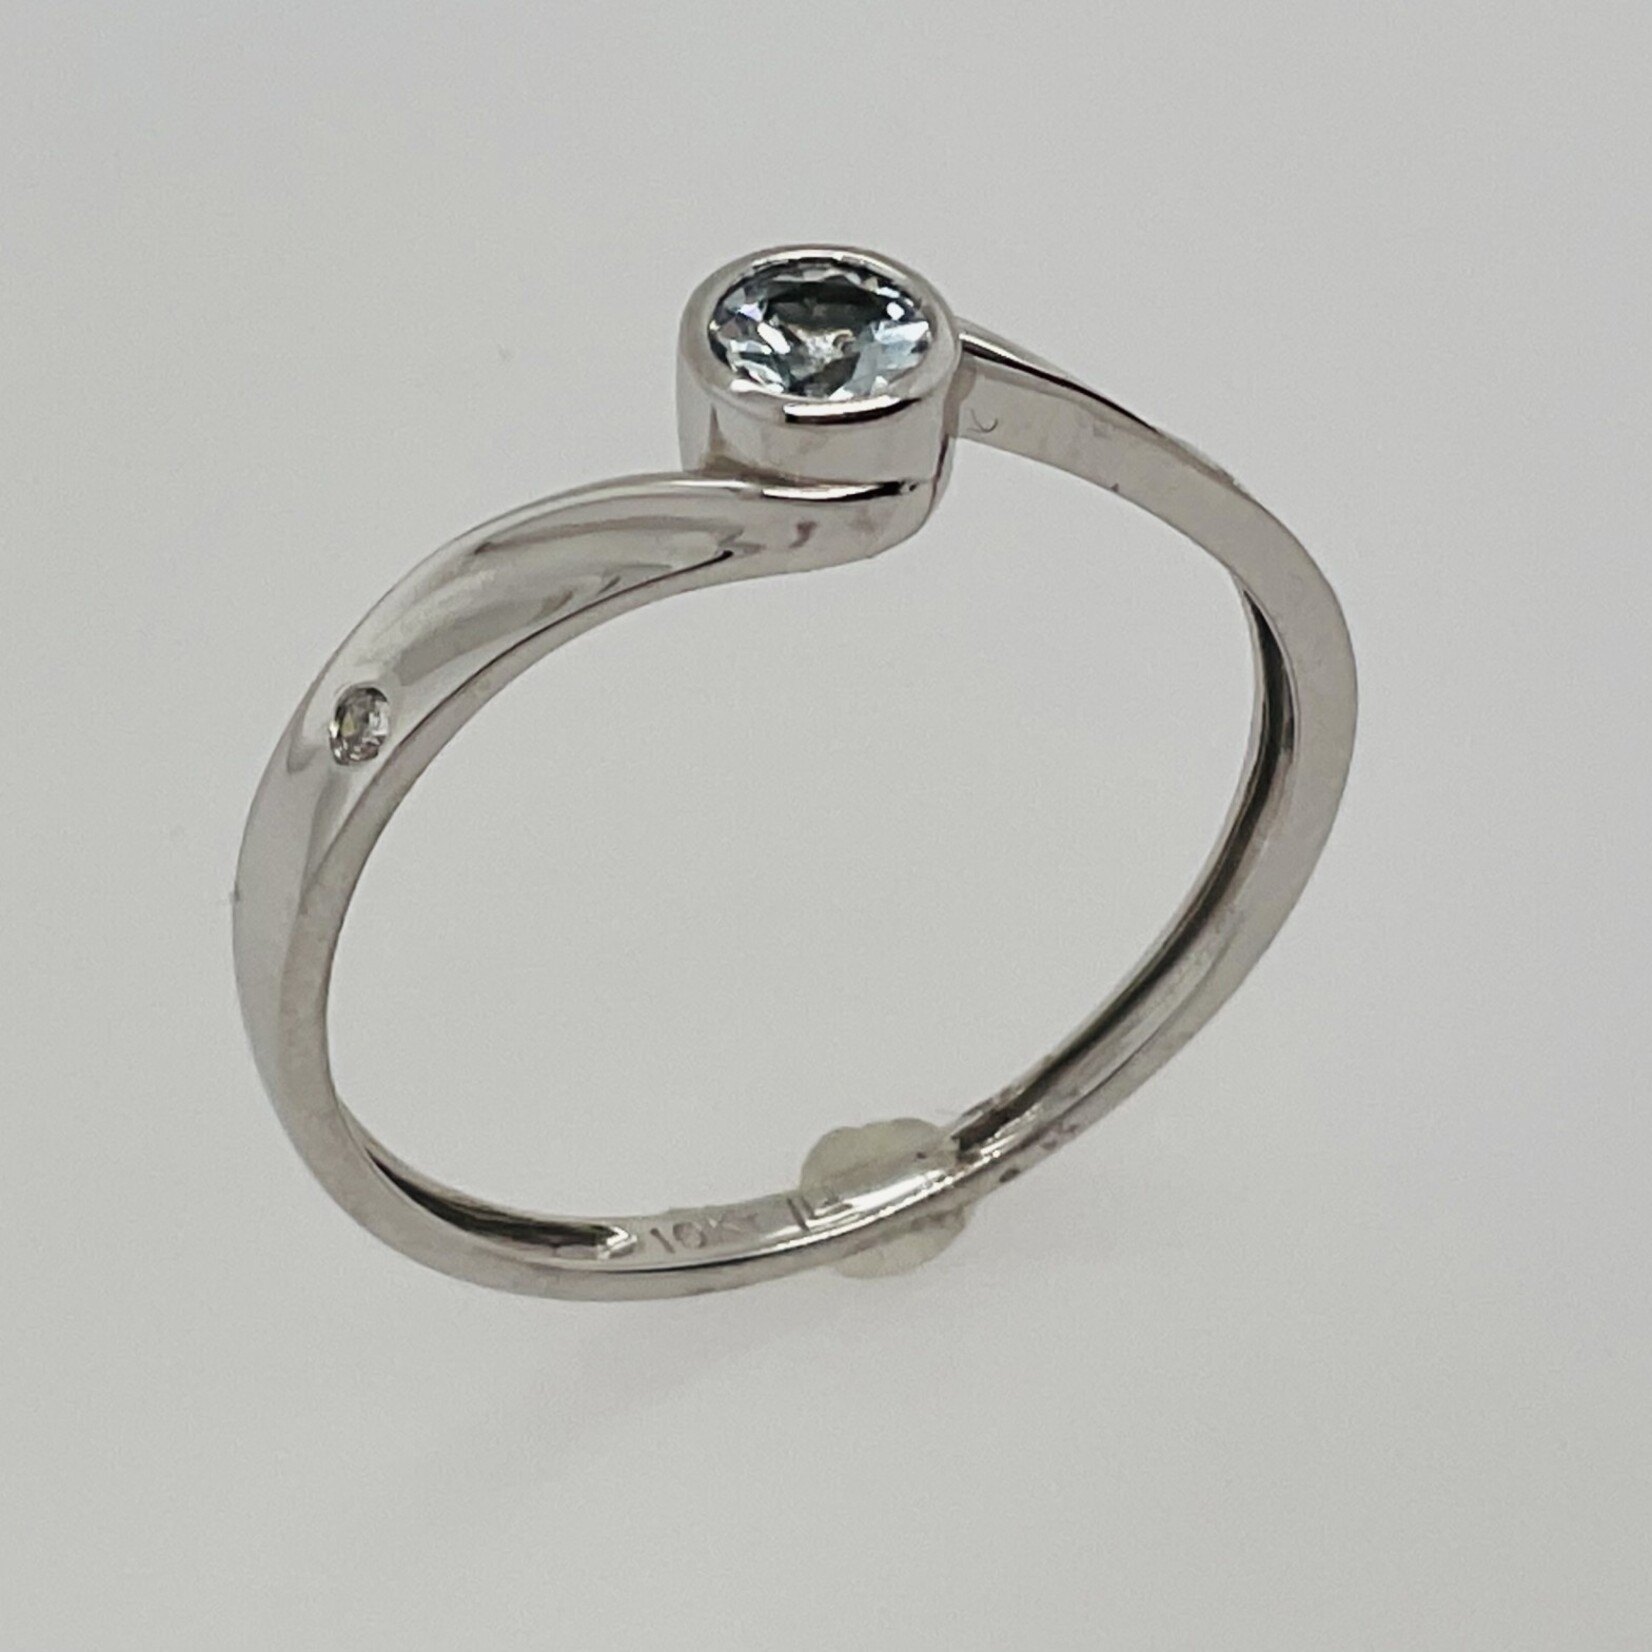 10 Kt W G Ladies Día .02 Ctw/Aquamarine Ring #7